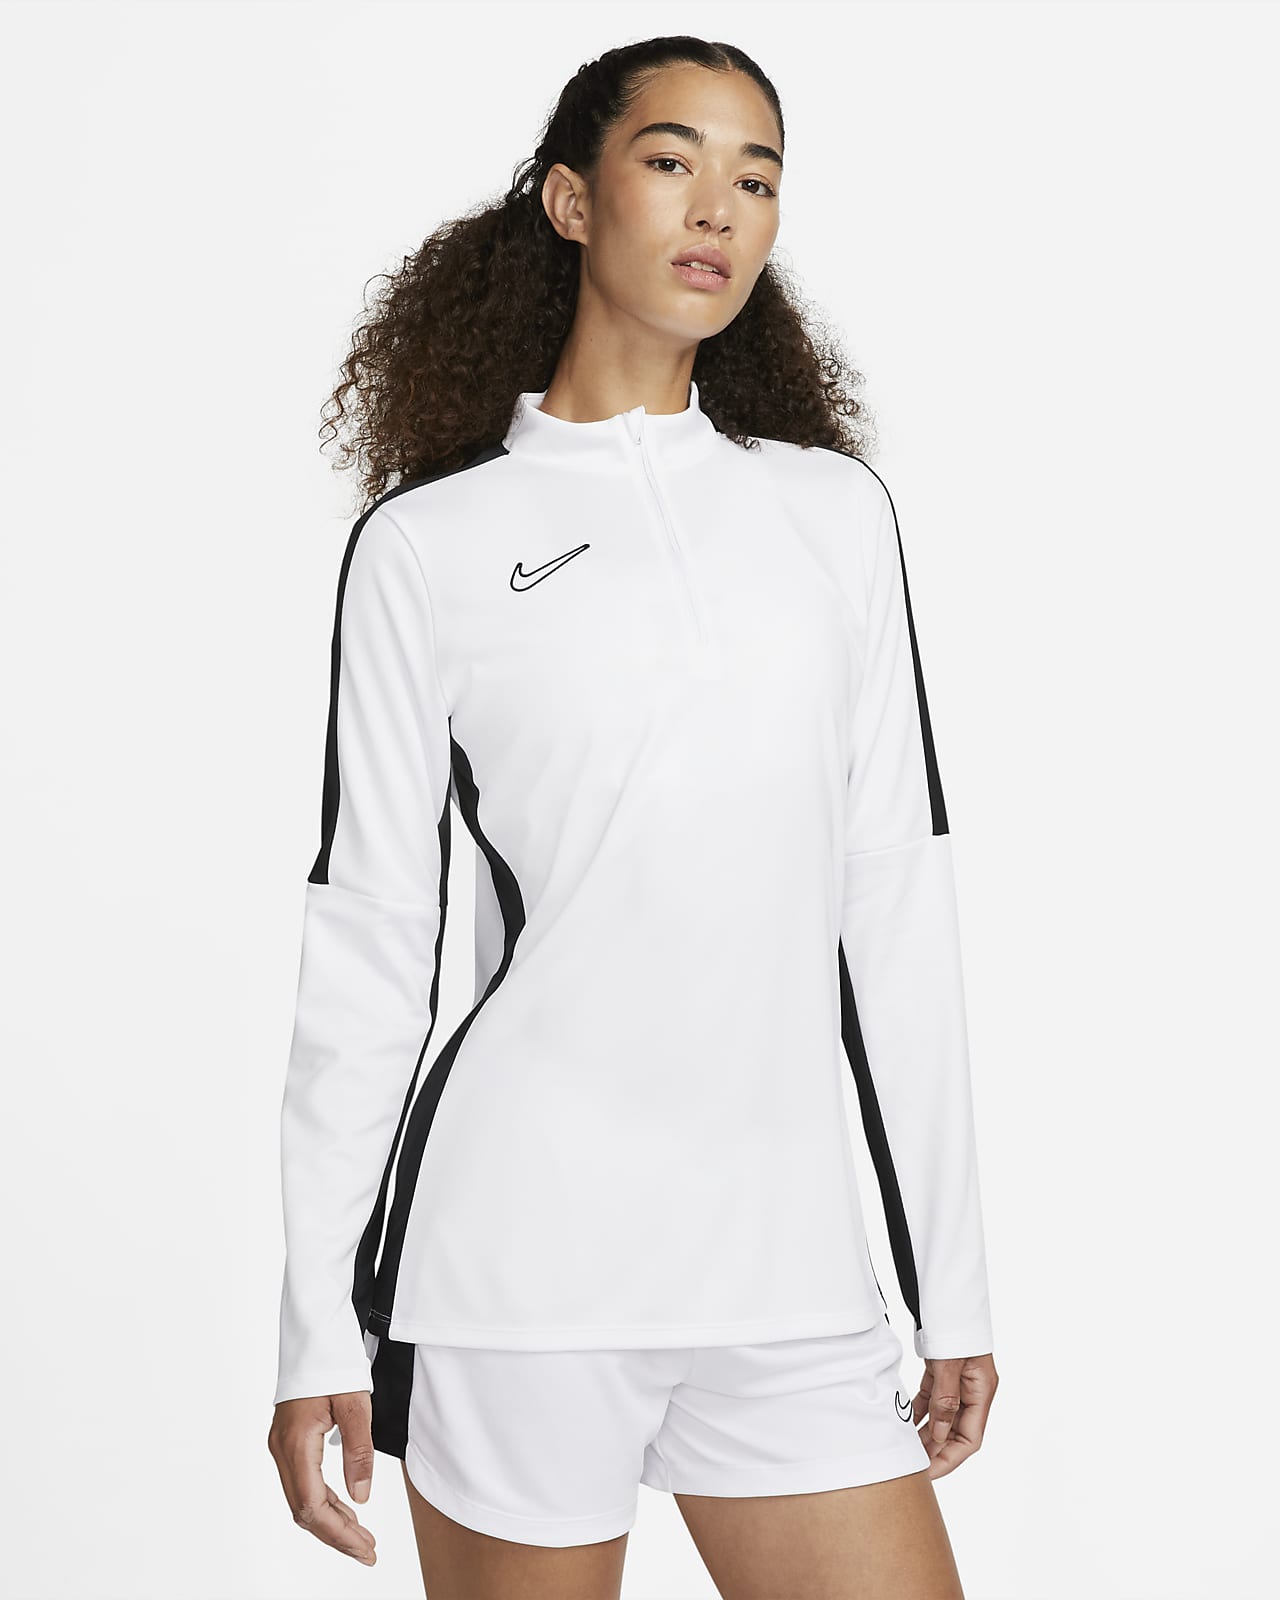 Nike Dri-FIT Academy fotballtreningsoverdel til dame